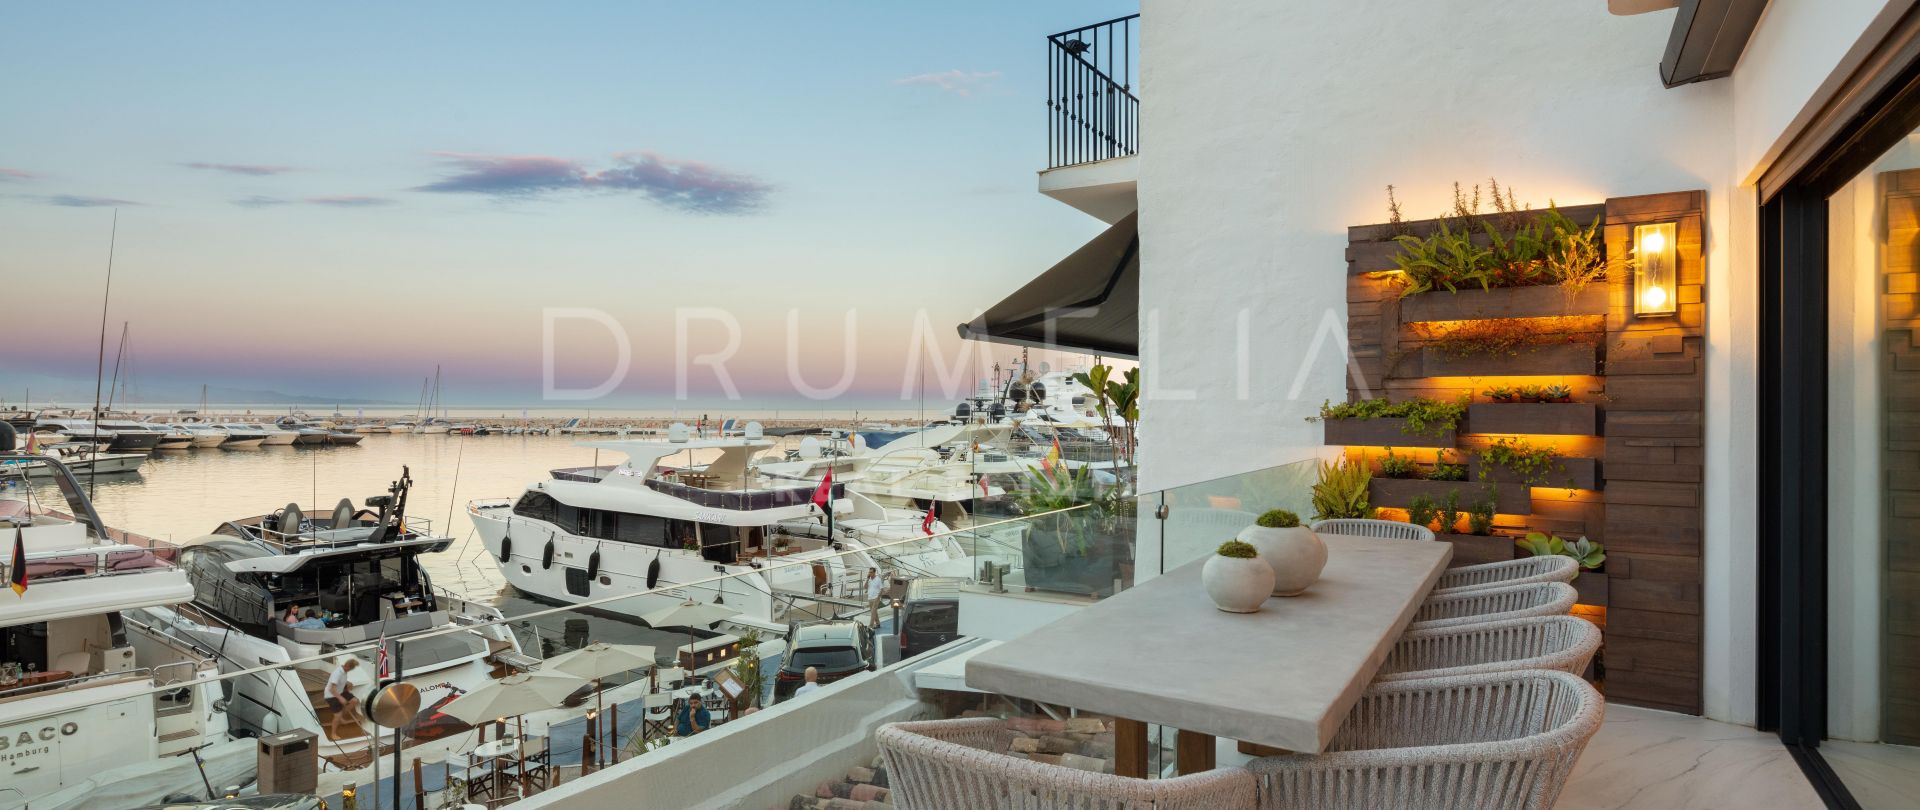 Hervorragende moderne Luxuswohnung mit Blick auf das Mittelmeer, Puerto Banus, Marbella